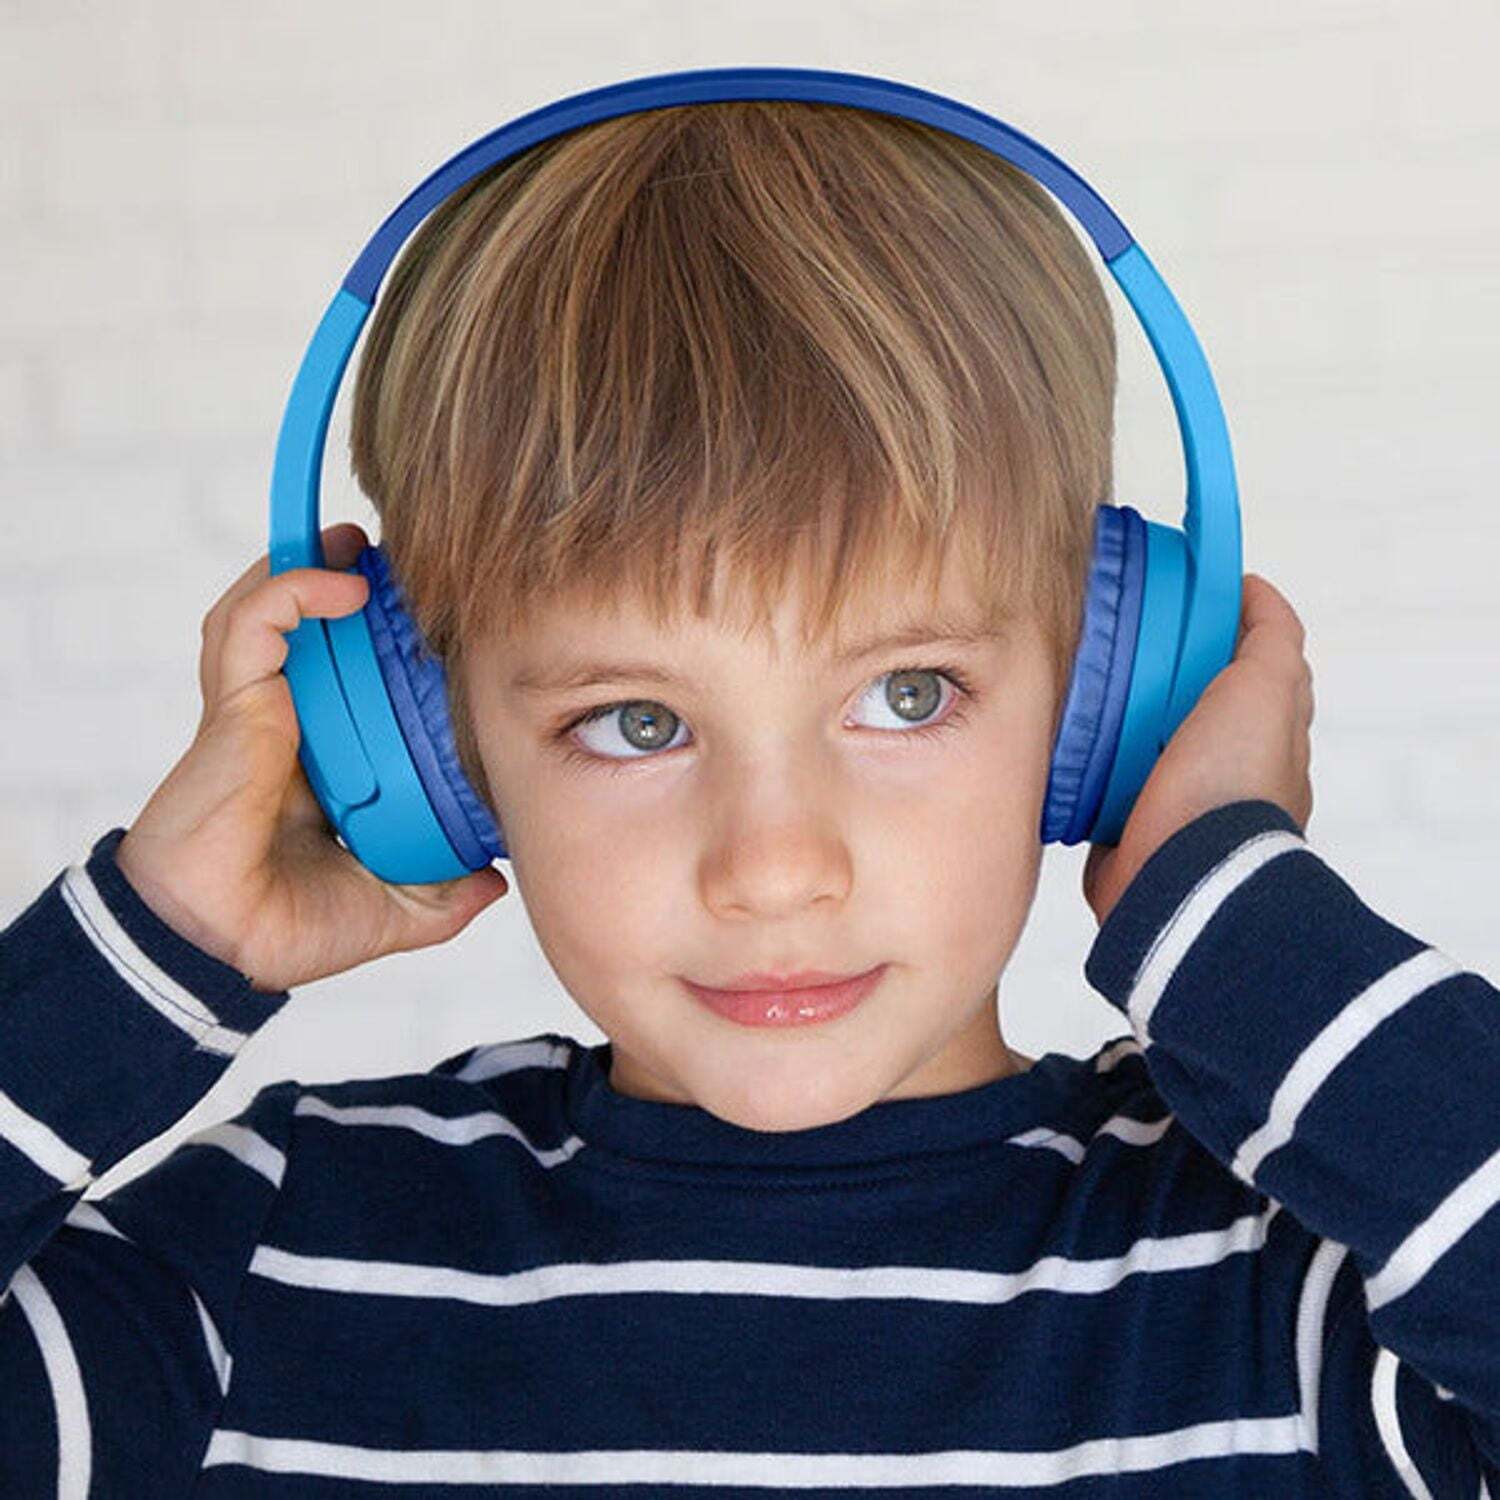 SoundForm Mini Cascos inalámbricos supraaurales para niños